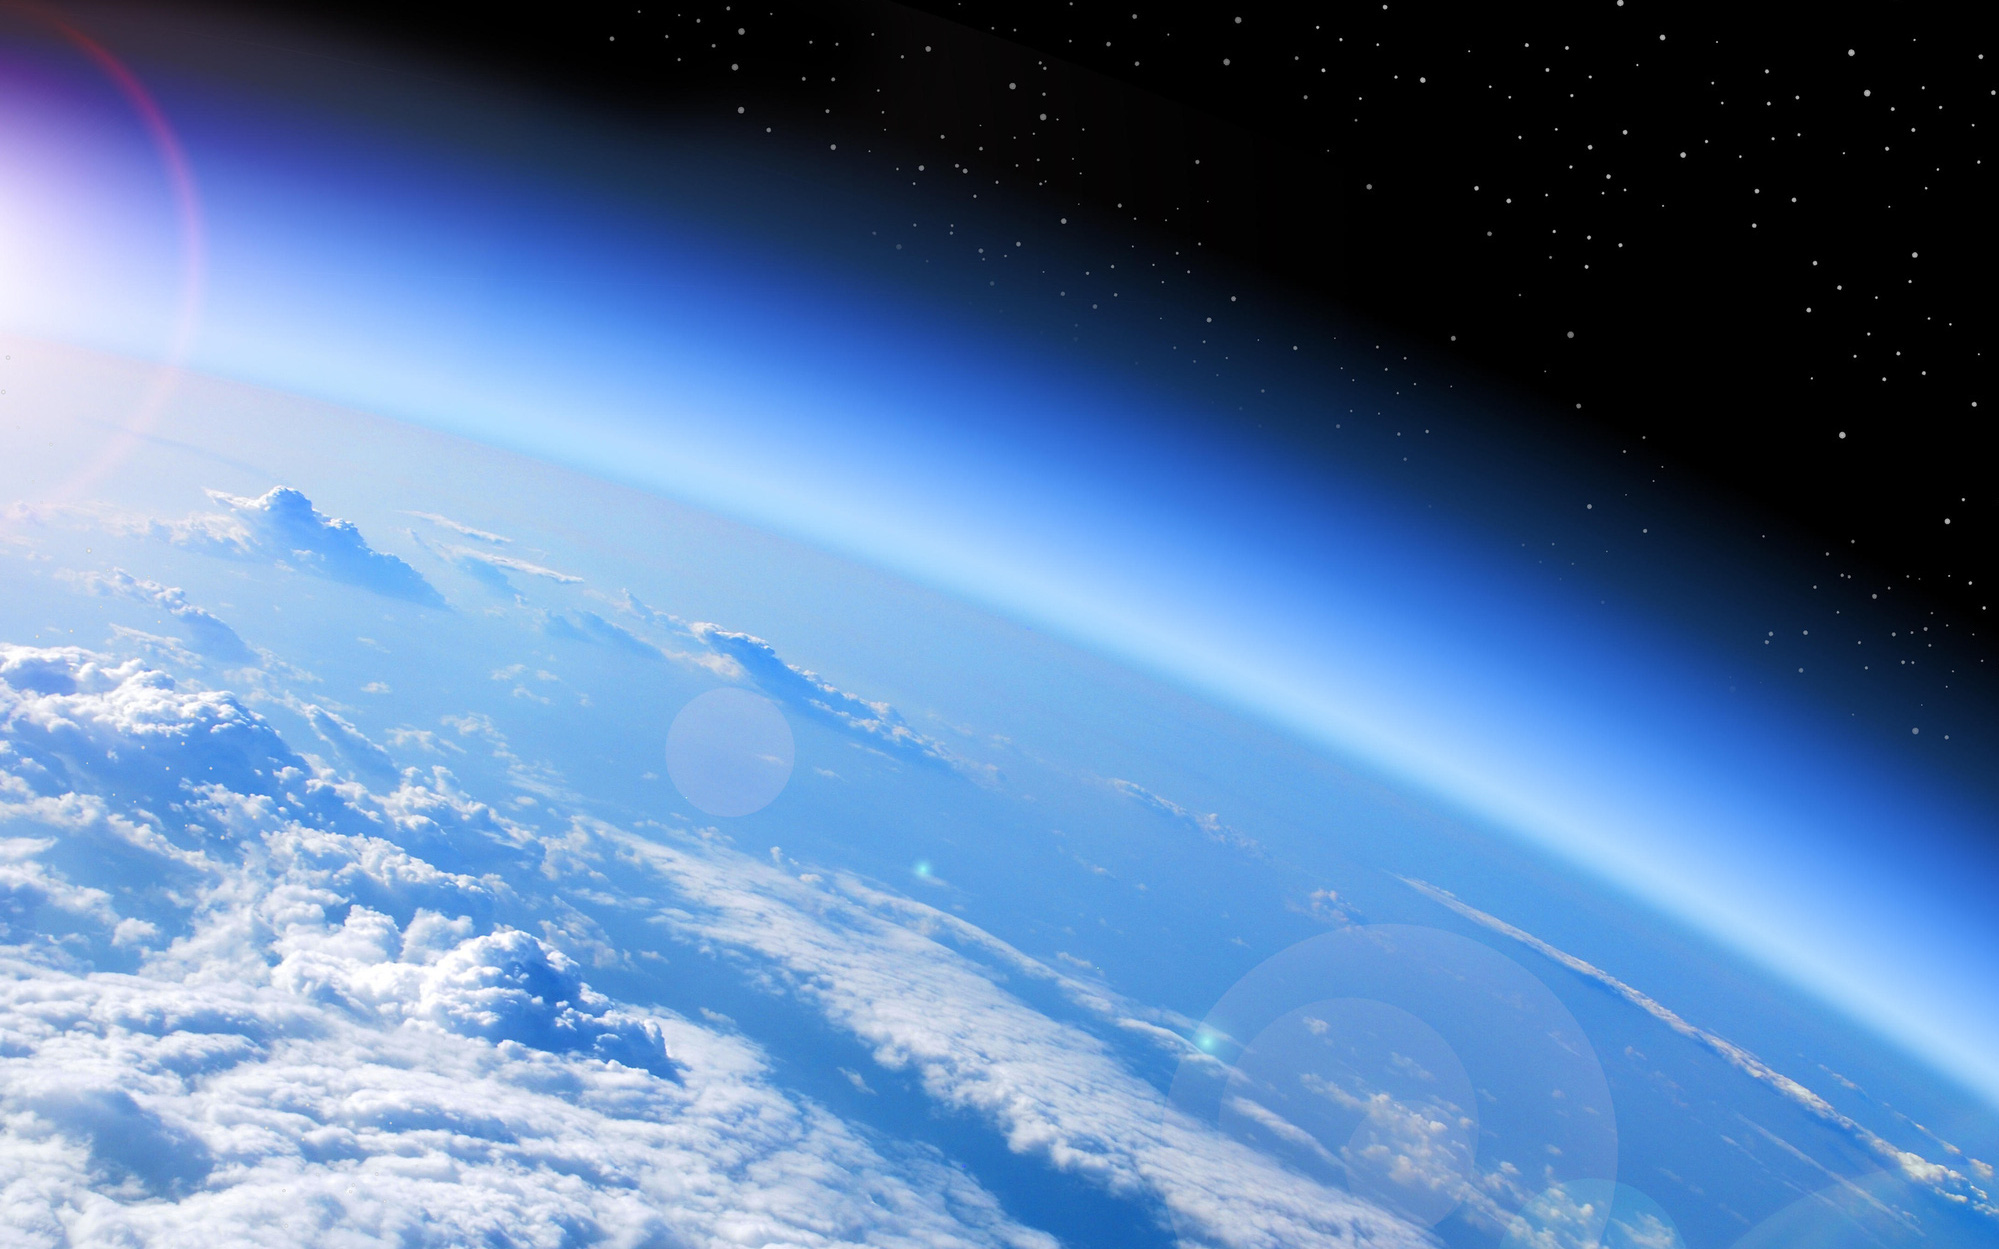 Ích lợi bất ngờ từ đại dịch: tầng ozone hồi phục nhanh hơn dự kiến 15 năm